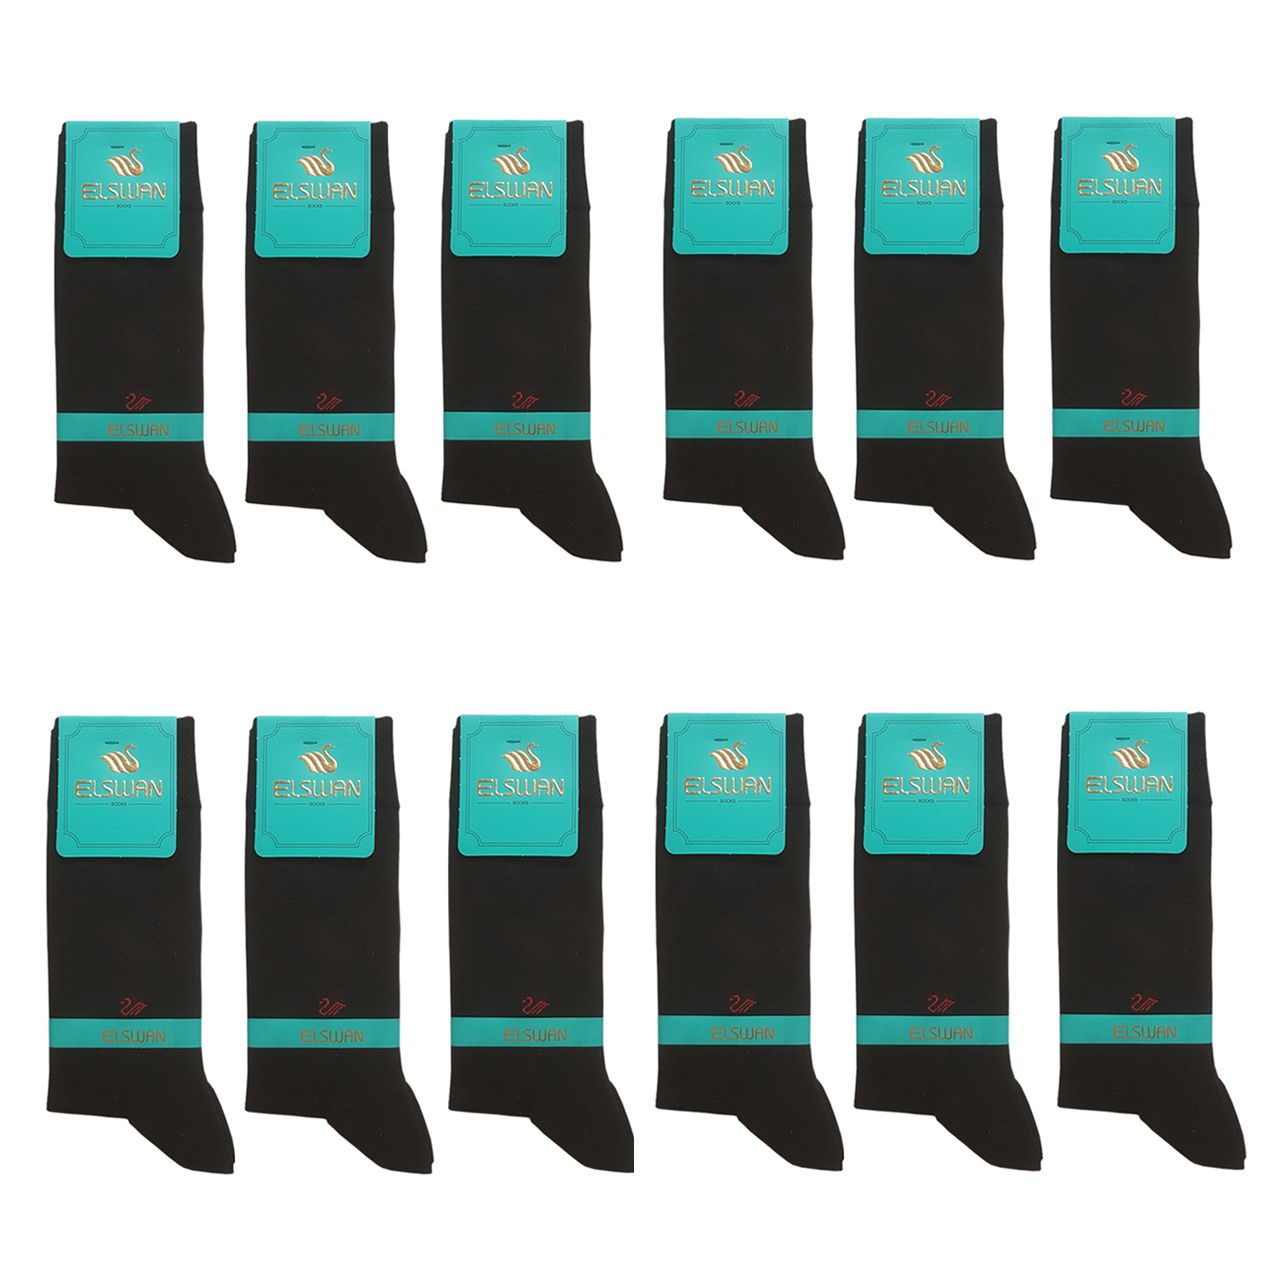 جوراب مردانه ال سون کد PH306 بسته 12 عددی -  - 1